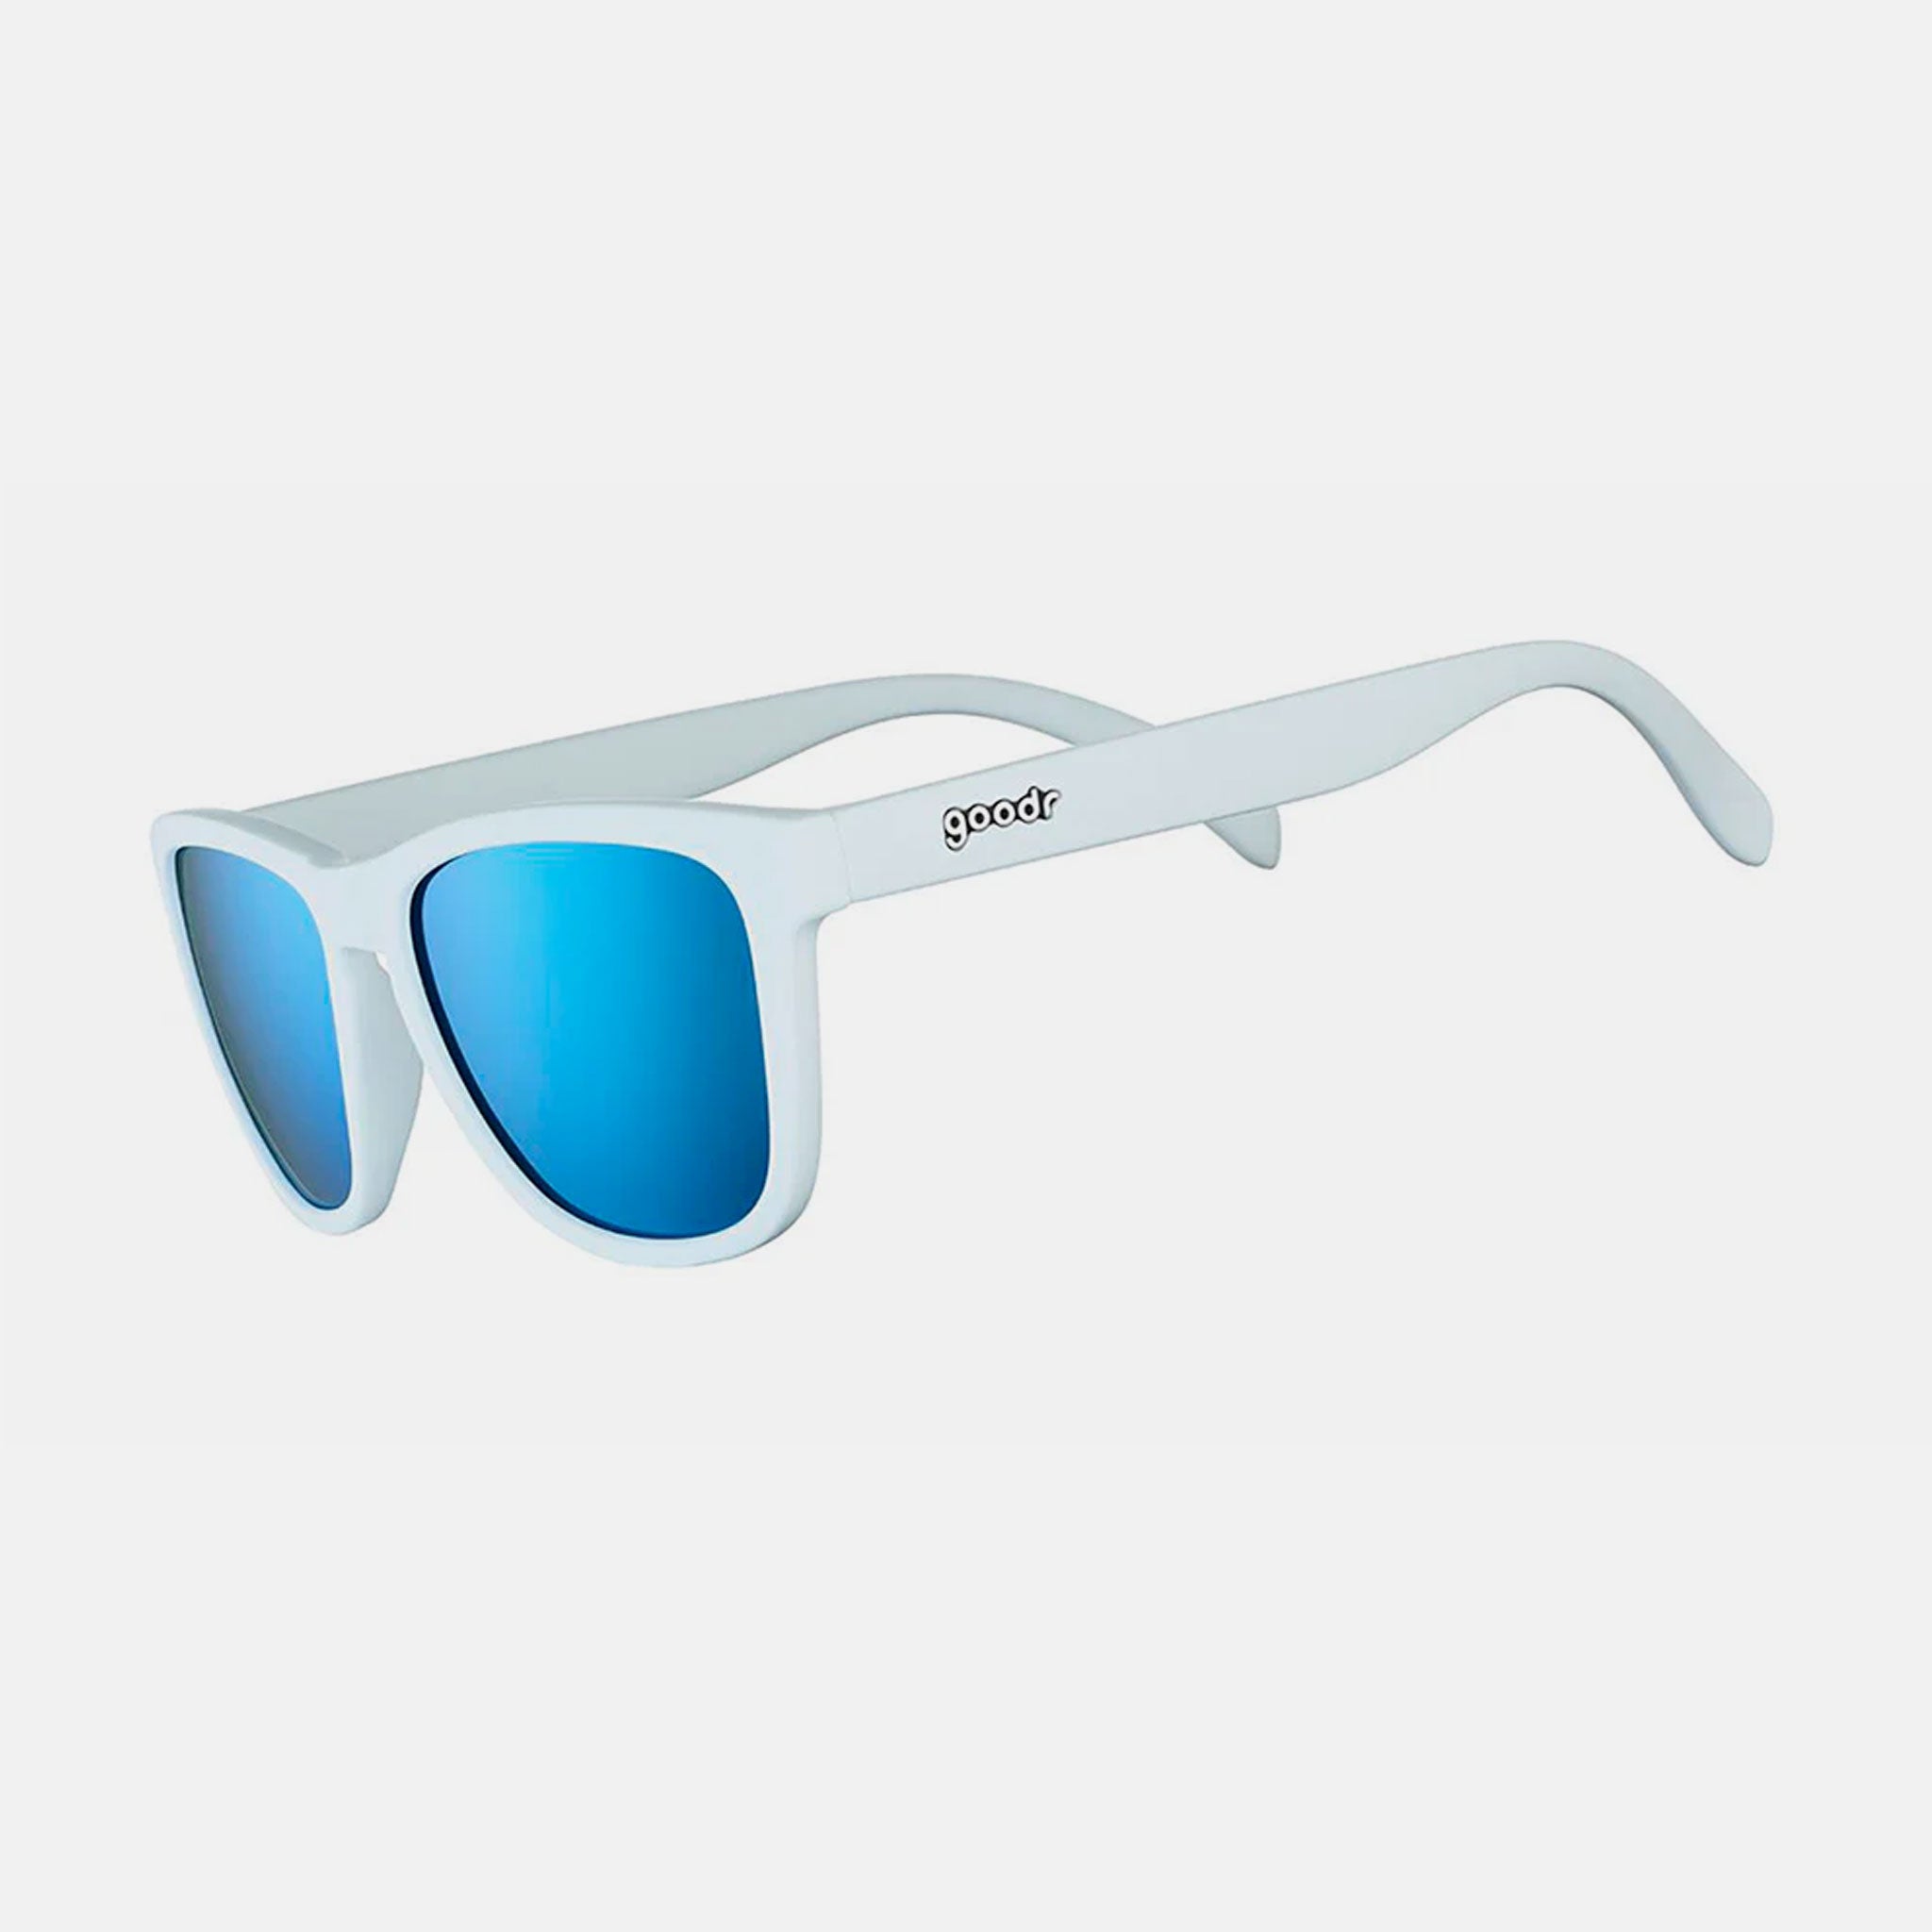 goodr-sunglasses-white-iced-by-yetis_01.jpg